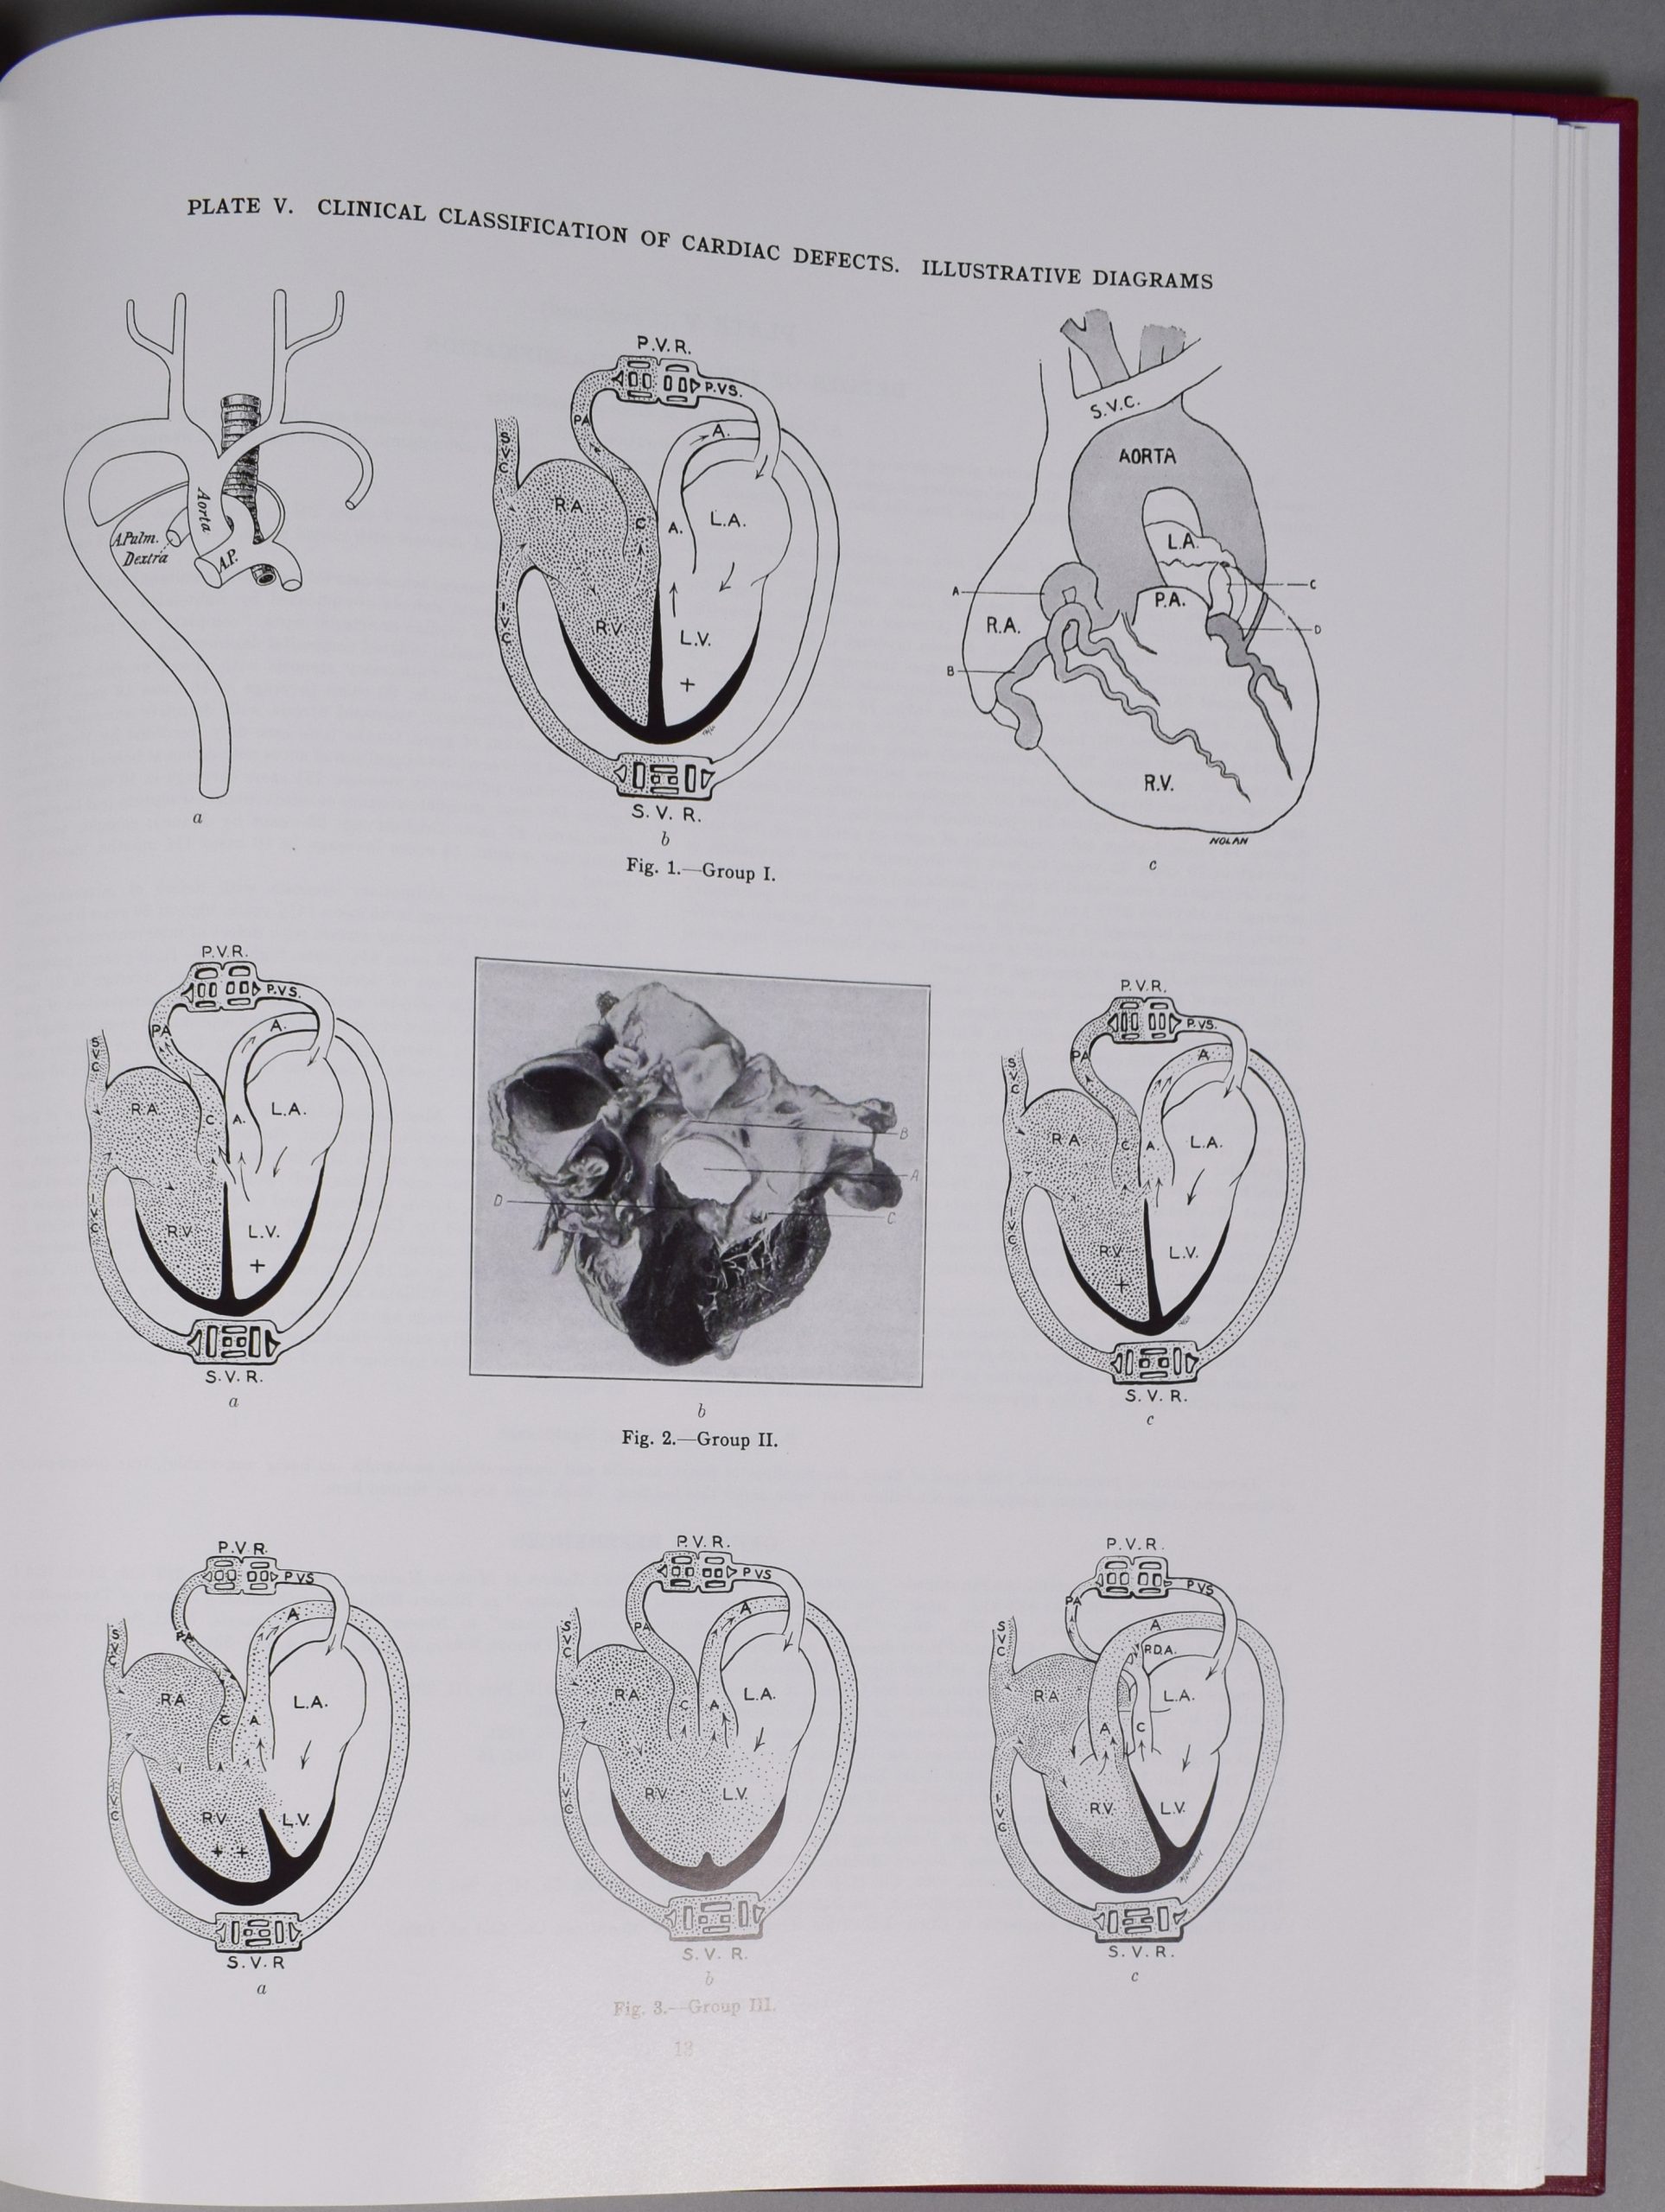 Photographie de la page 12 de l’Atlas de Maude Abbott. En haut de la page, l’inscription « Plate V. Clinical Classification of Cardiac Defects. Illustrative Diagrams » et on y voit 9 figures représentant différentes parties du cœur en images.